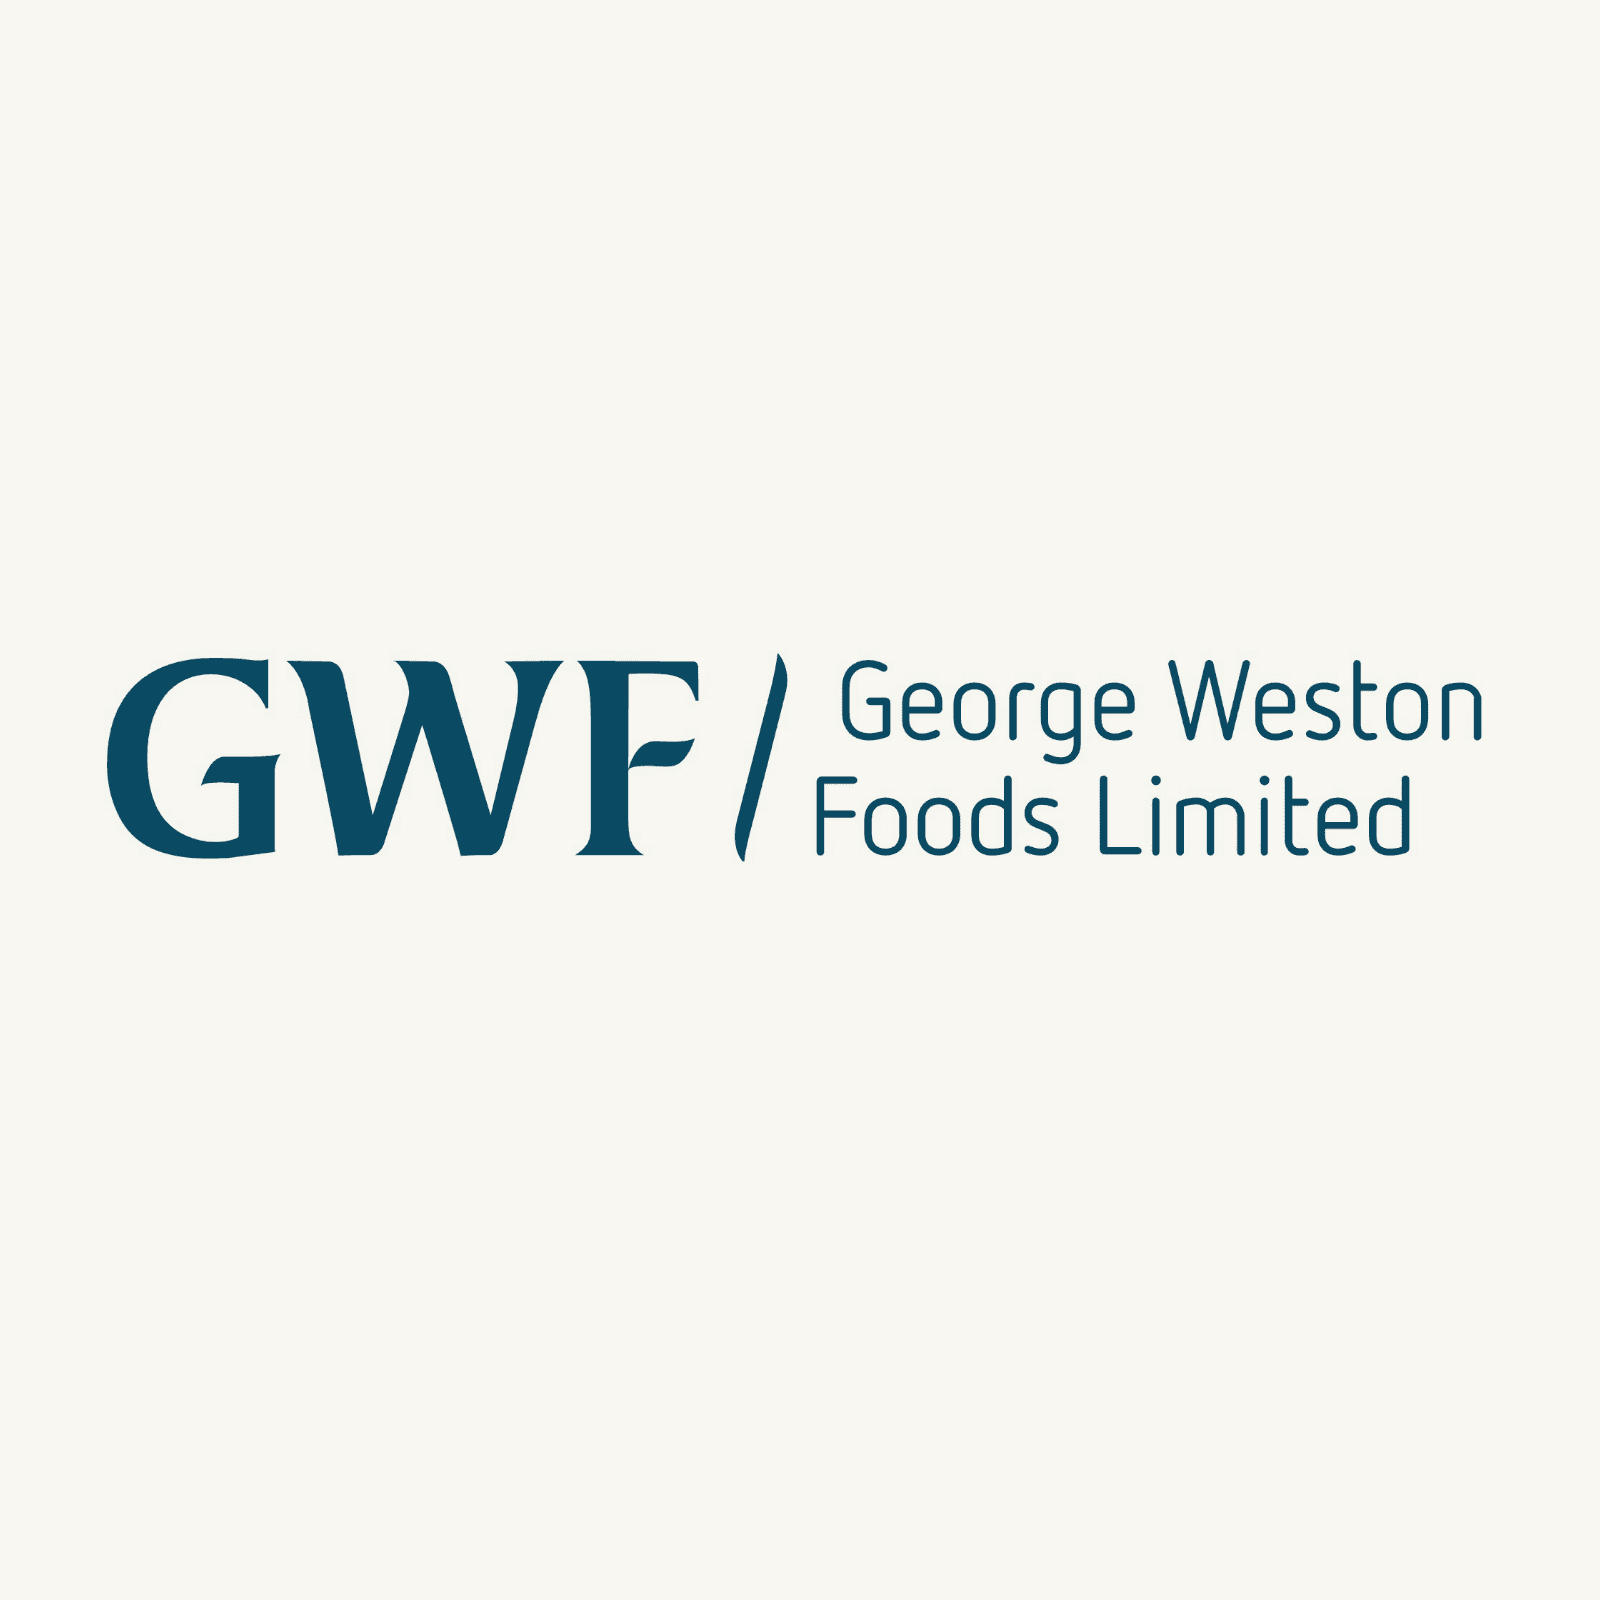 Image of George Weston Foods